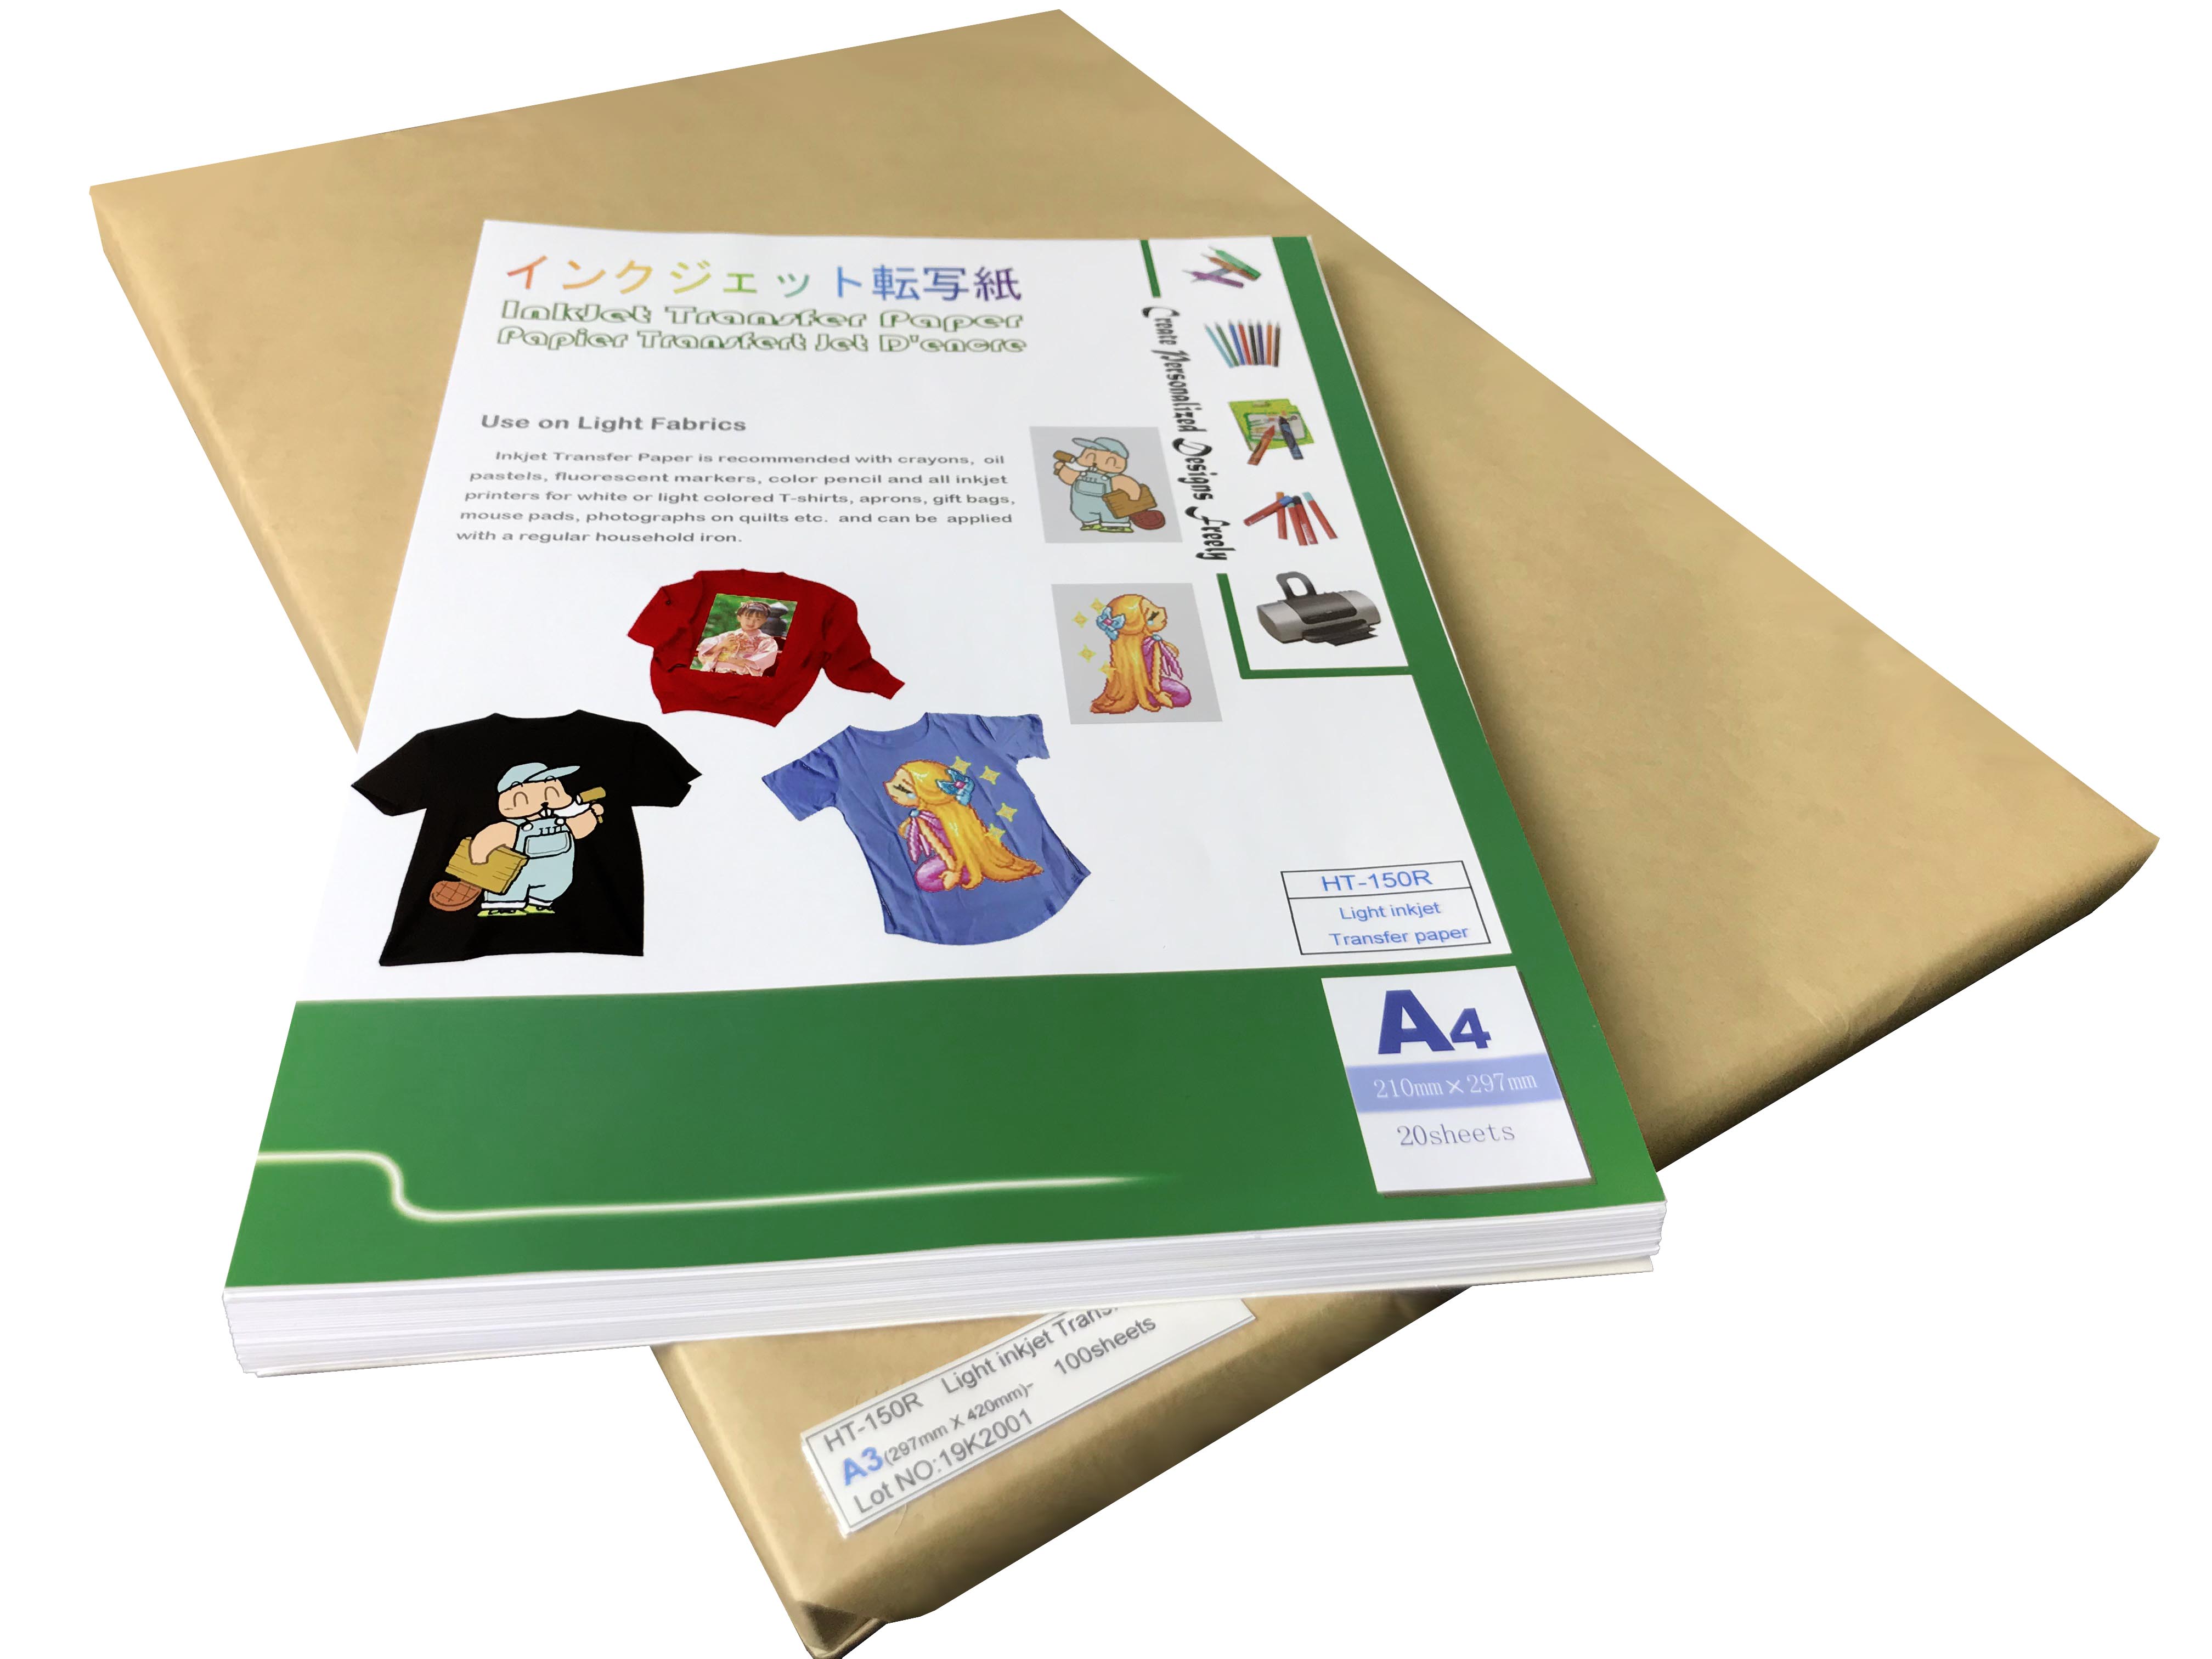 Factory supplied Inkjet Transfer Paper Supplier - Light InkJet transfer paper – Alizarin